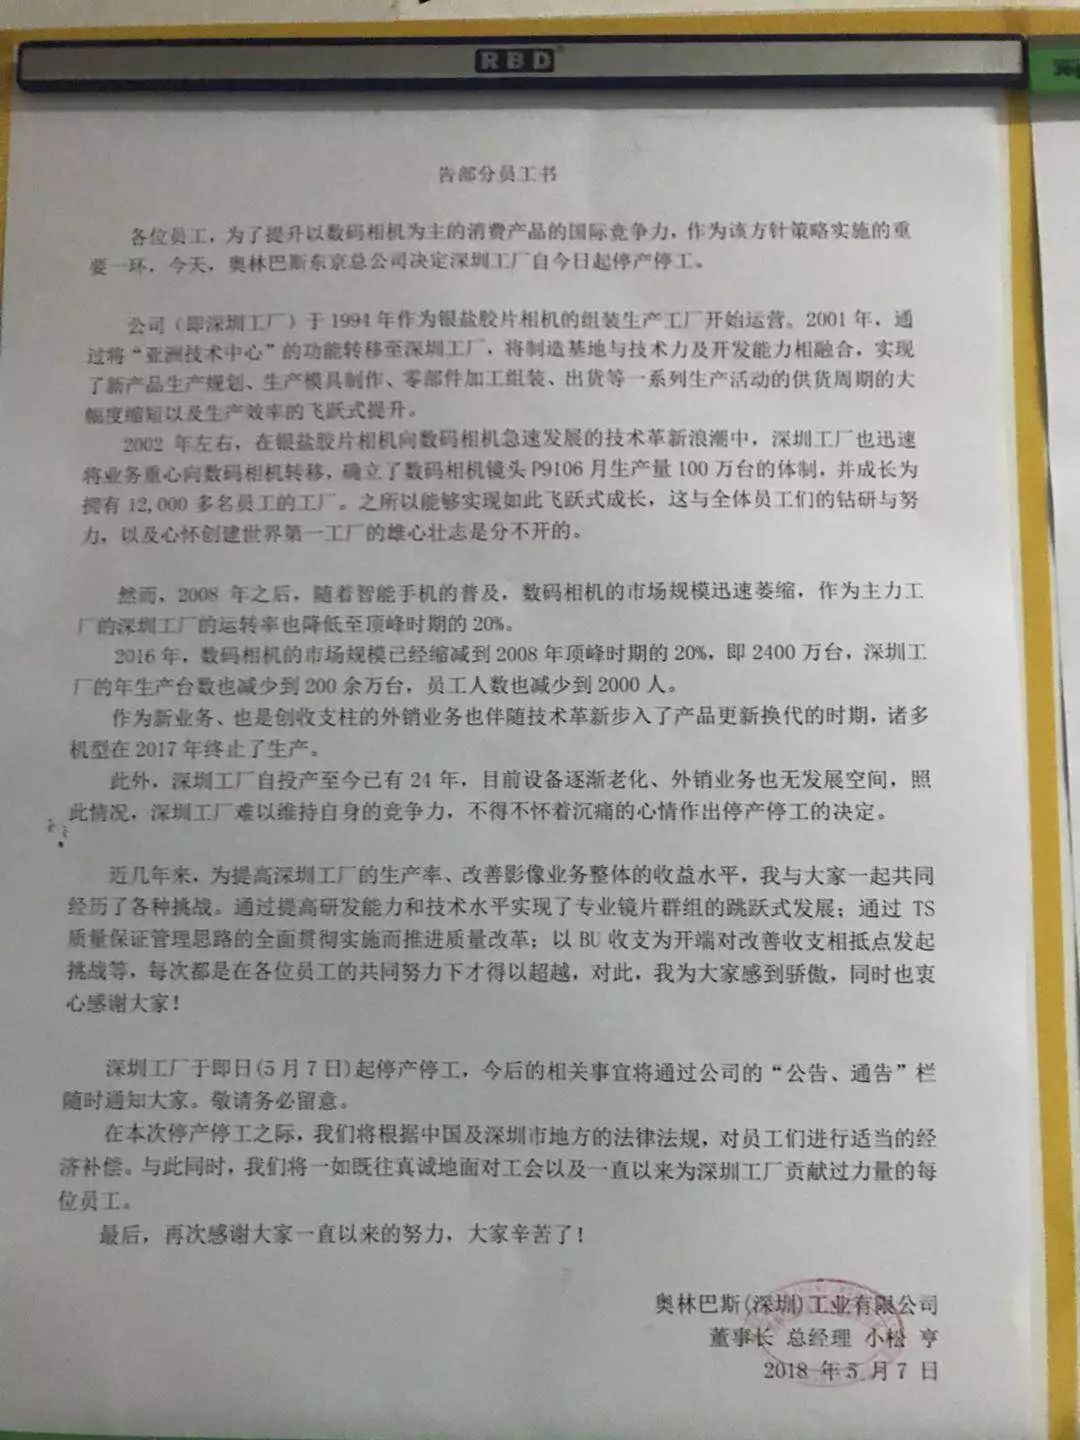 深圳奥林巴斯宣布停产停工 未给出具体离职补